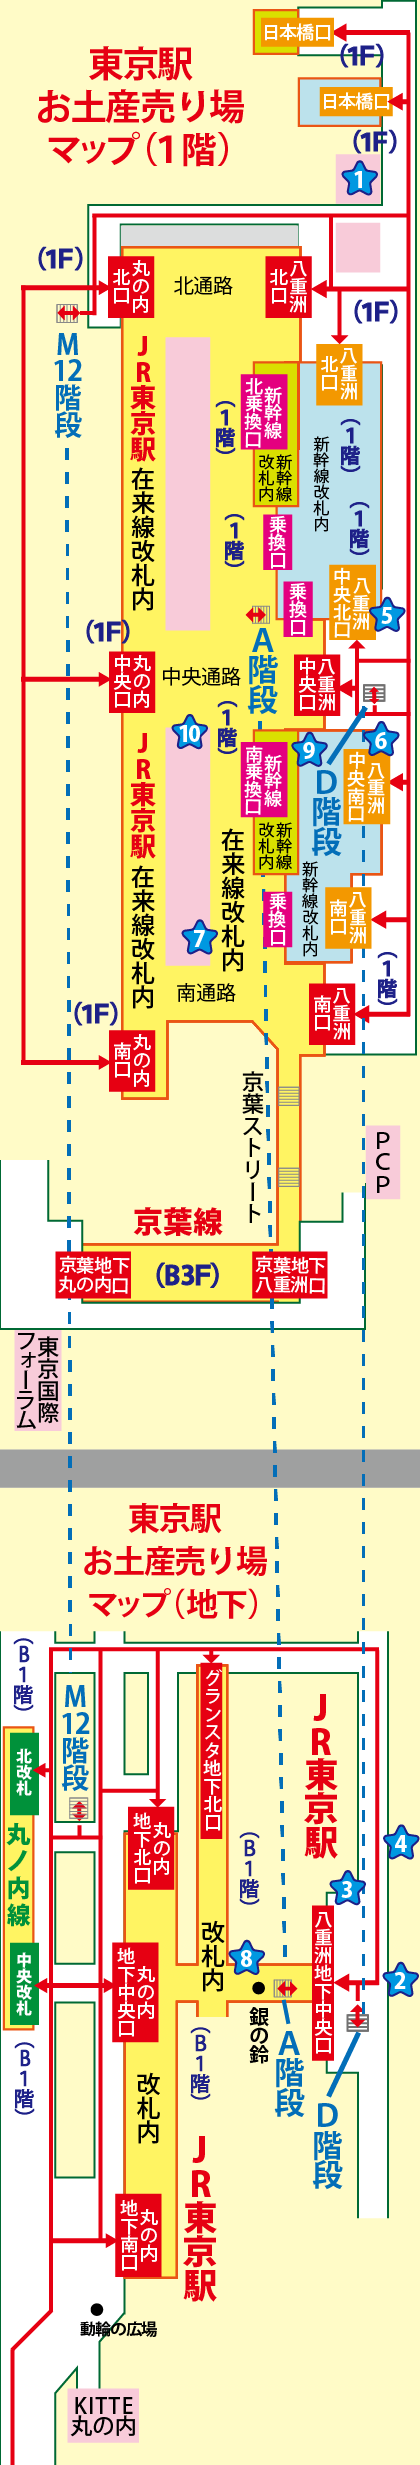 東京駅お土産売り場マップ